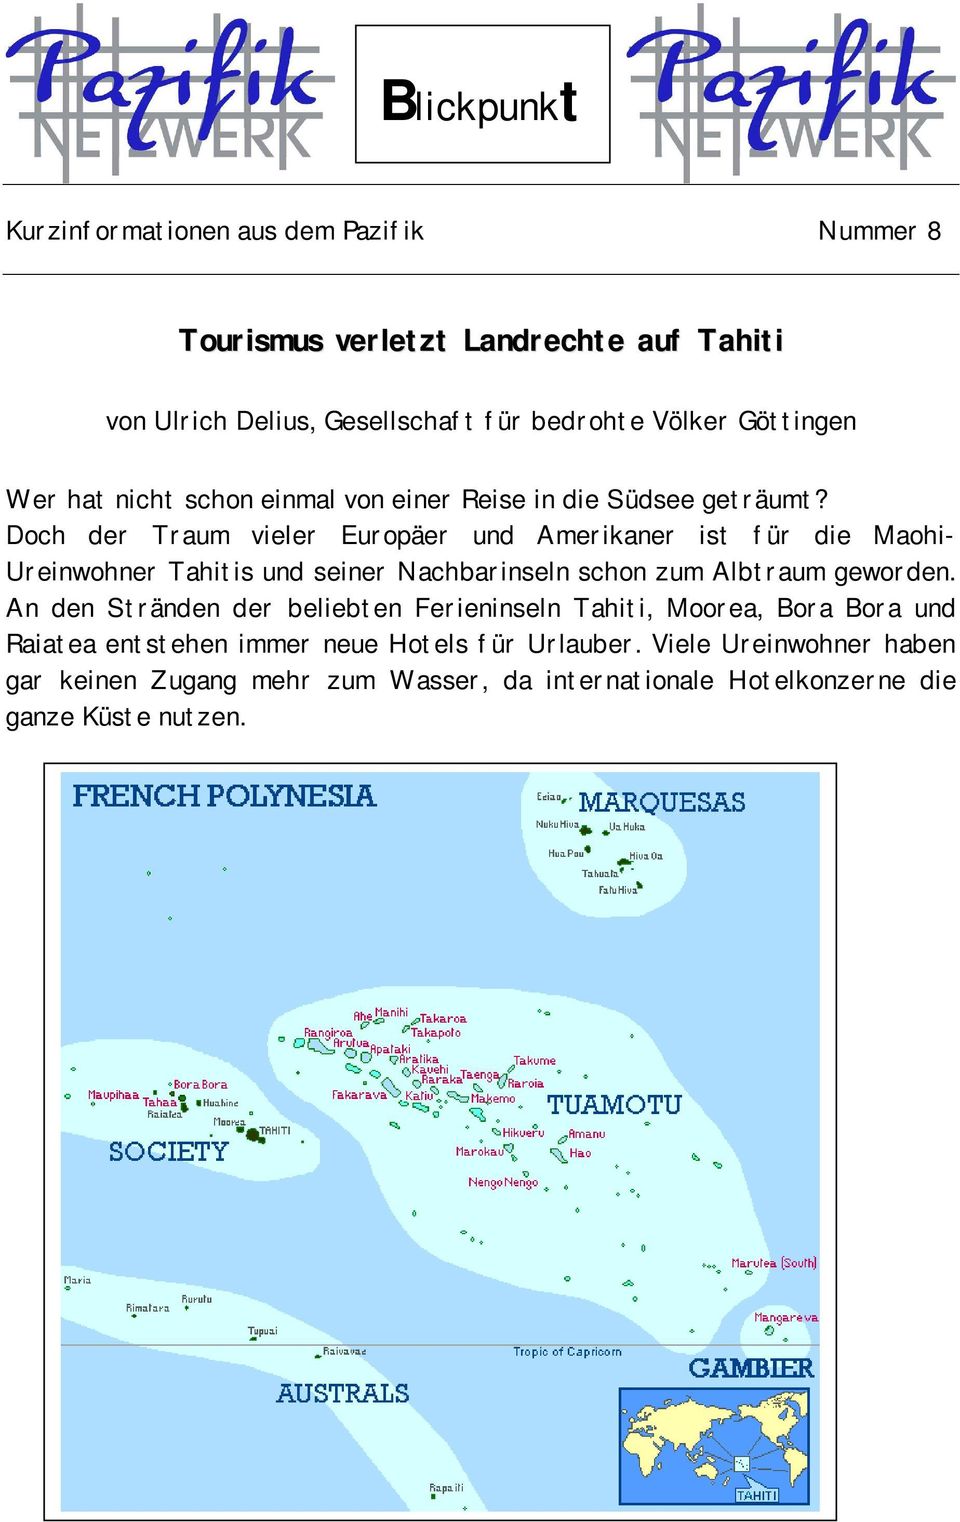 Doch der Traum vieler Europäer und Amerikaner ist für die Maohi- Ureinwohner Tahitis und seiner Nachbarinseln schon zum Albtraum geworden.